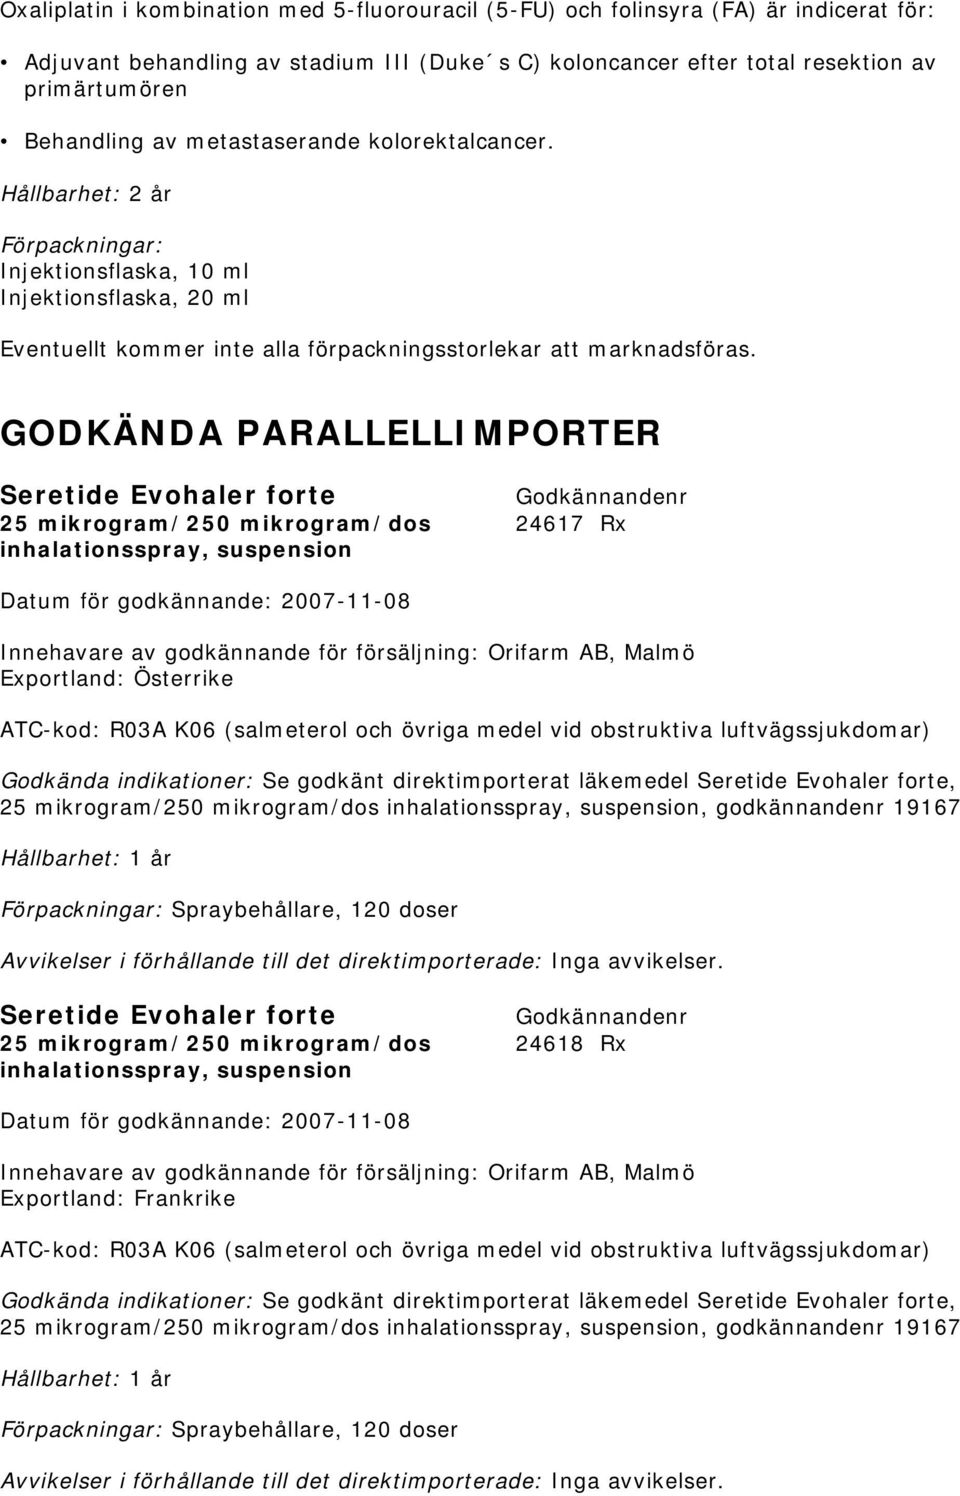 GODKÄNDA PARALLELLIMPORTER Seretide Evohaler forte 25 mikrogram/250 mikrogram/dos 24617 Rx inhalationsspray, suspension Datum för godkännande: 2007-11-08 Exportland: Österrike ATC-kod: R03A K06